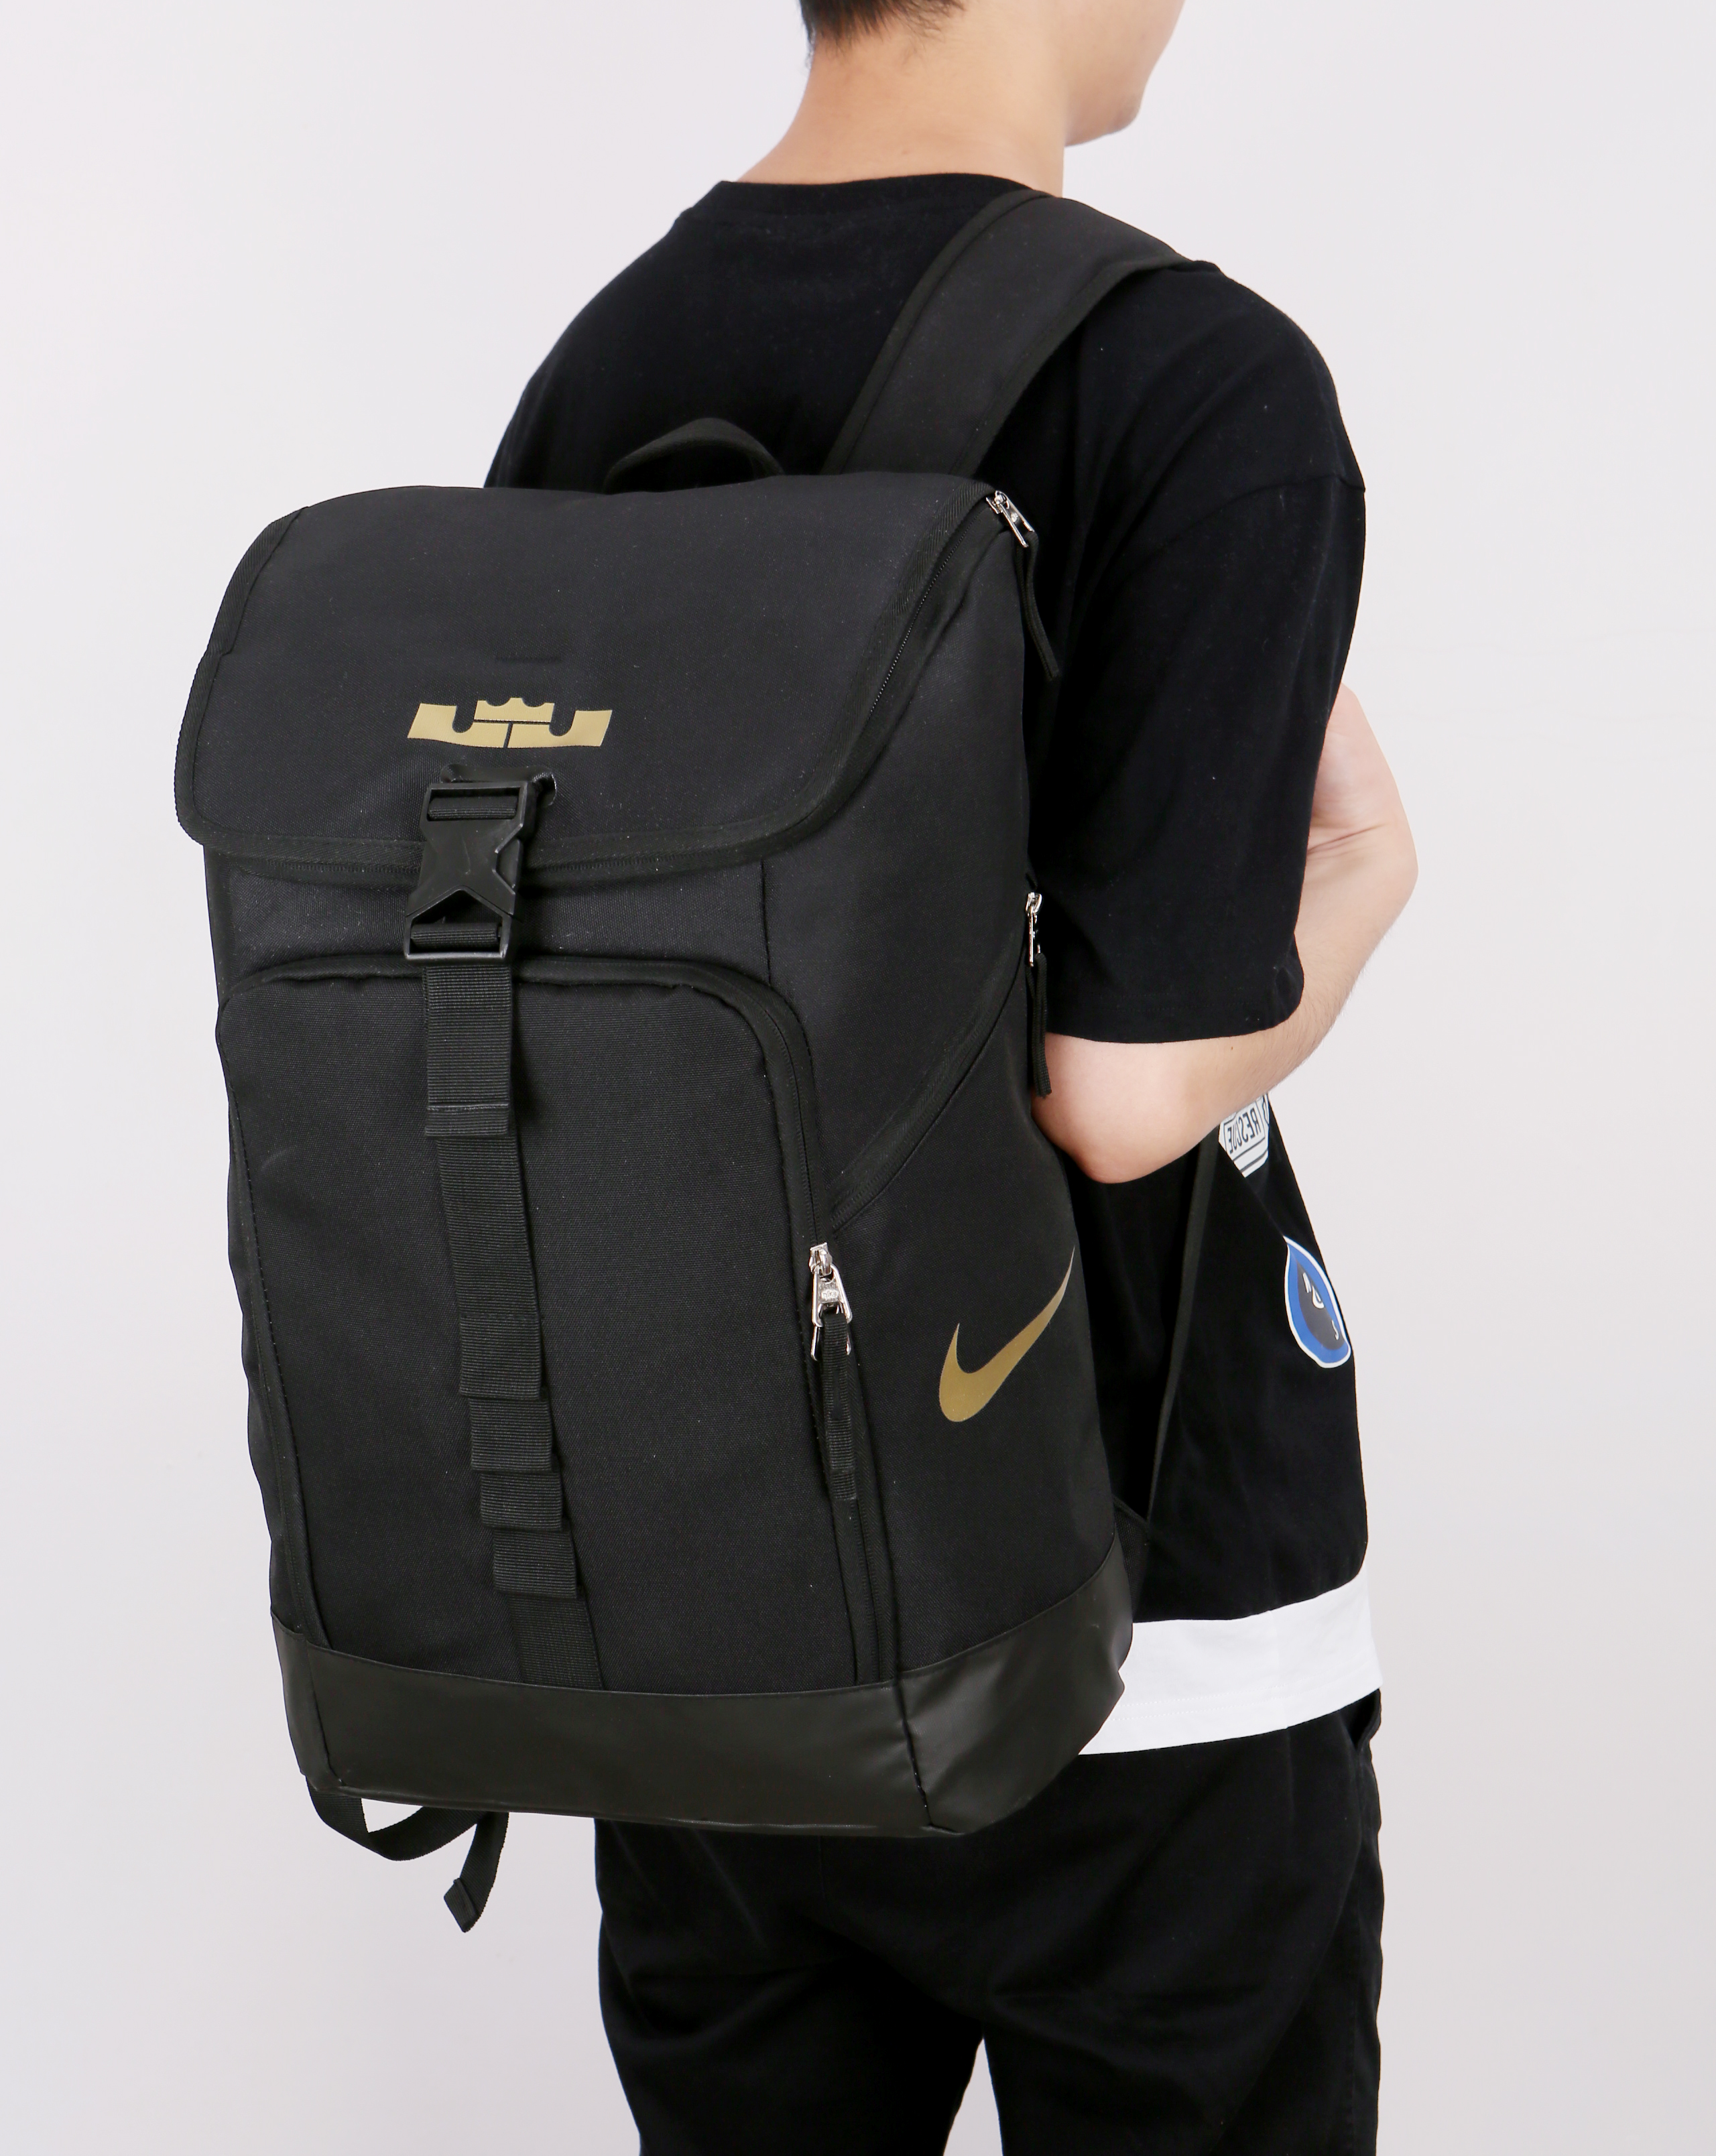 Nike LeBron Backpack Black Gold